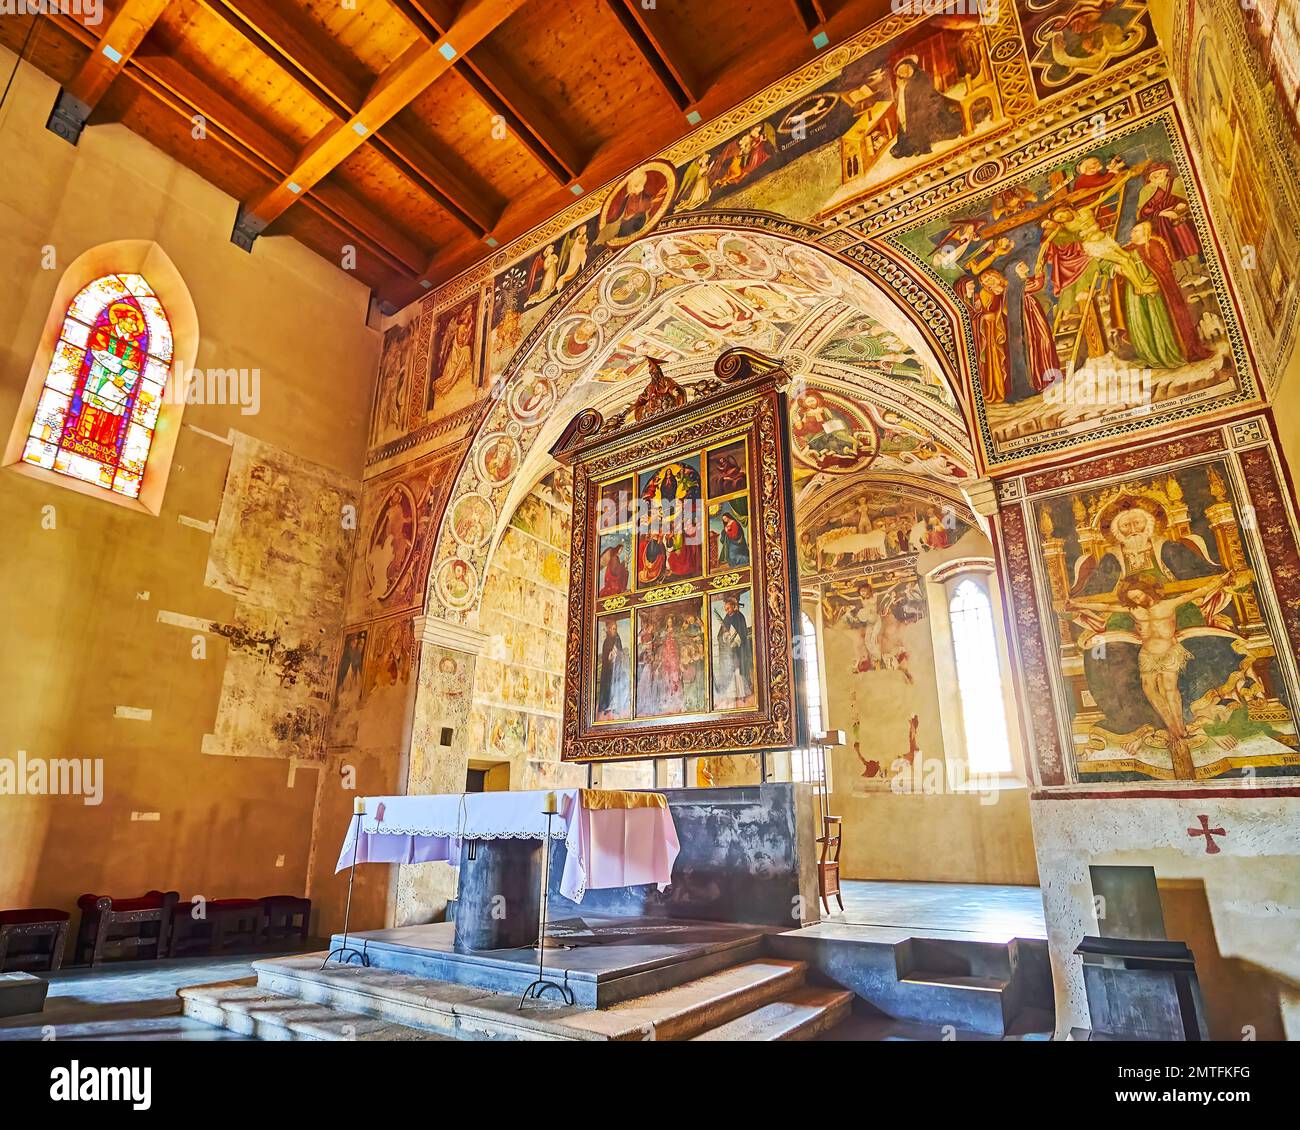 ASCONA, SUIZA - 28 DE MARZO de 2022: Los frescos medievales y el ornamentado altar principal de la iglesia de Santa María de la Misericordia, el 28 de marzo en Ascona Foto de stock